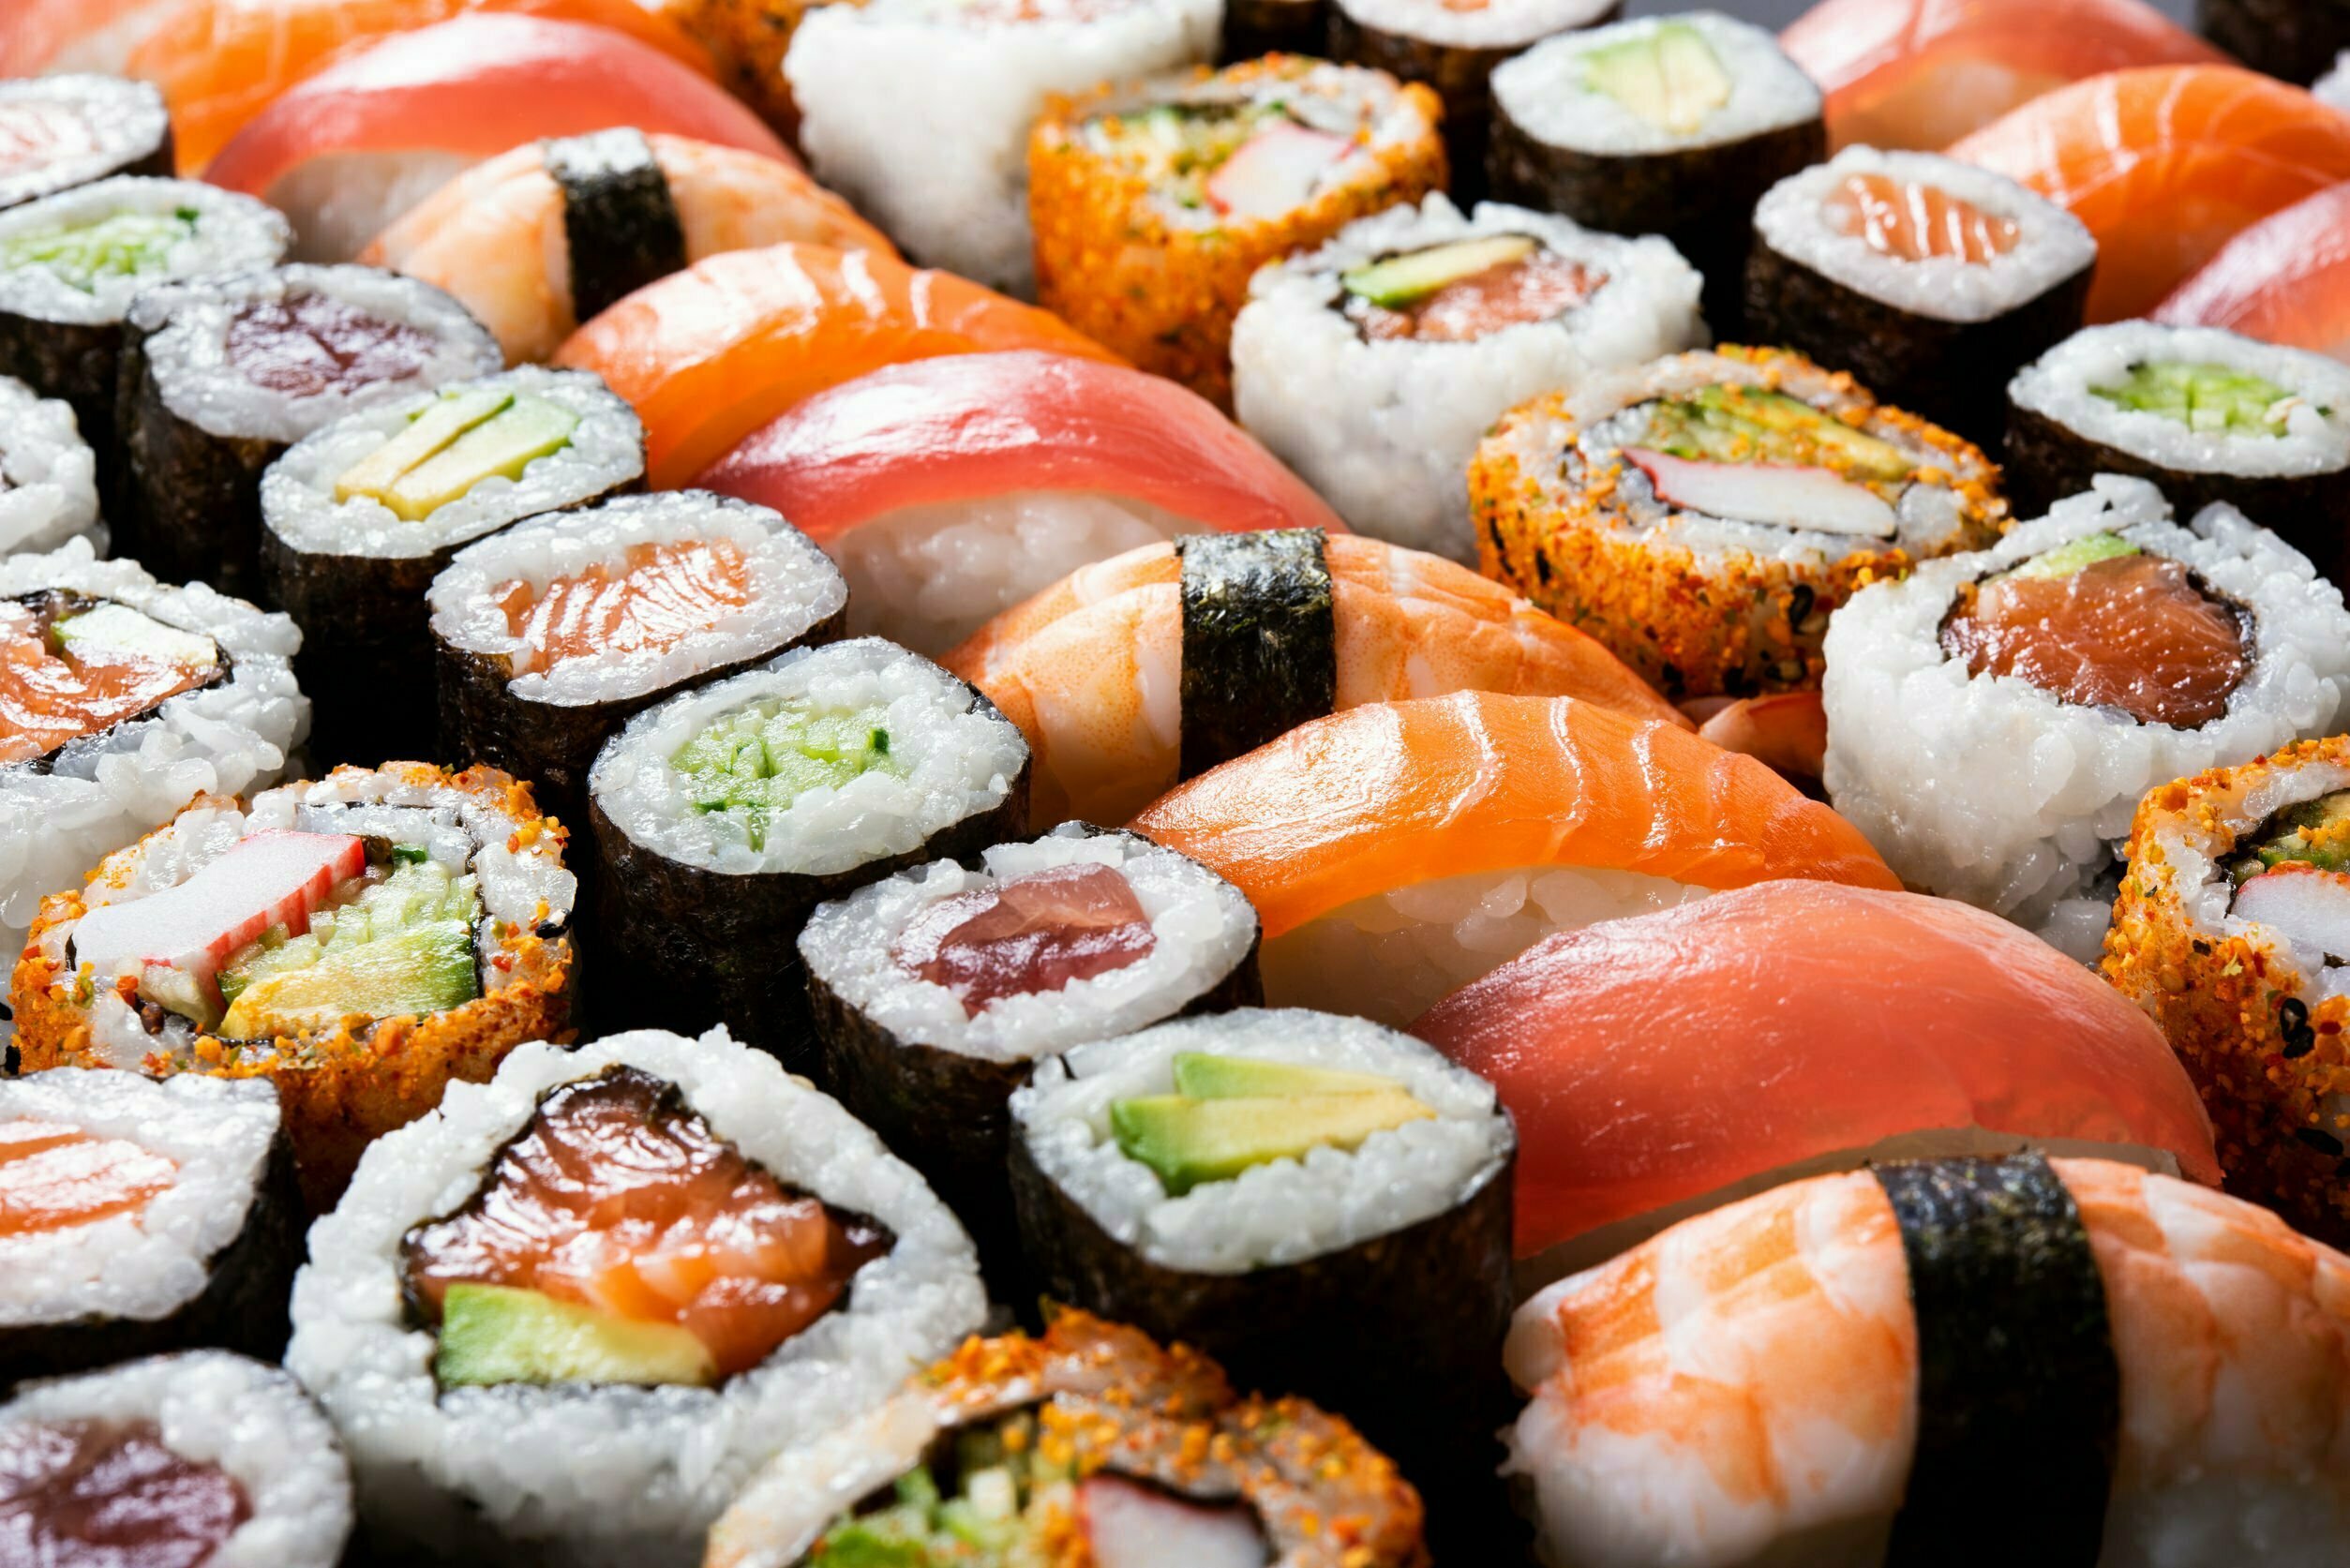 Worm nestelt zich in amandelen van sushi-etende vrouw 12